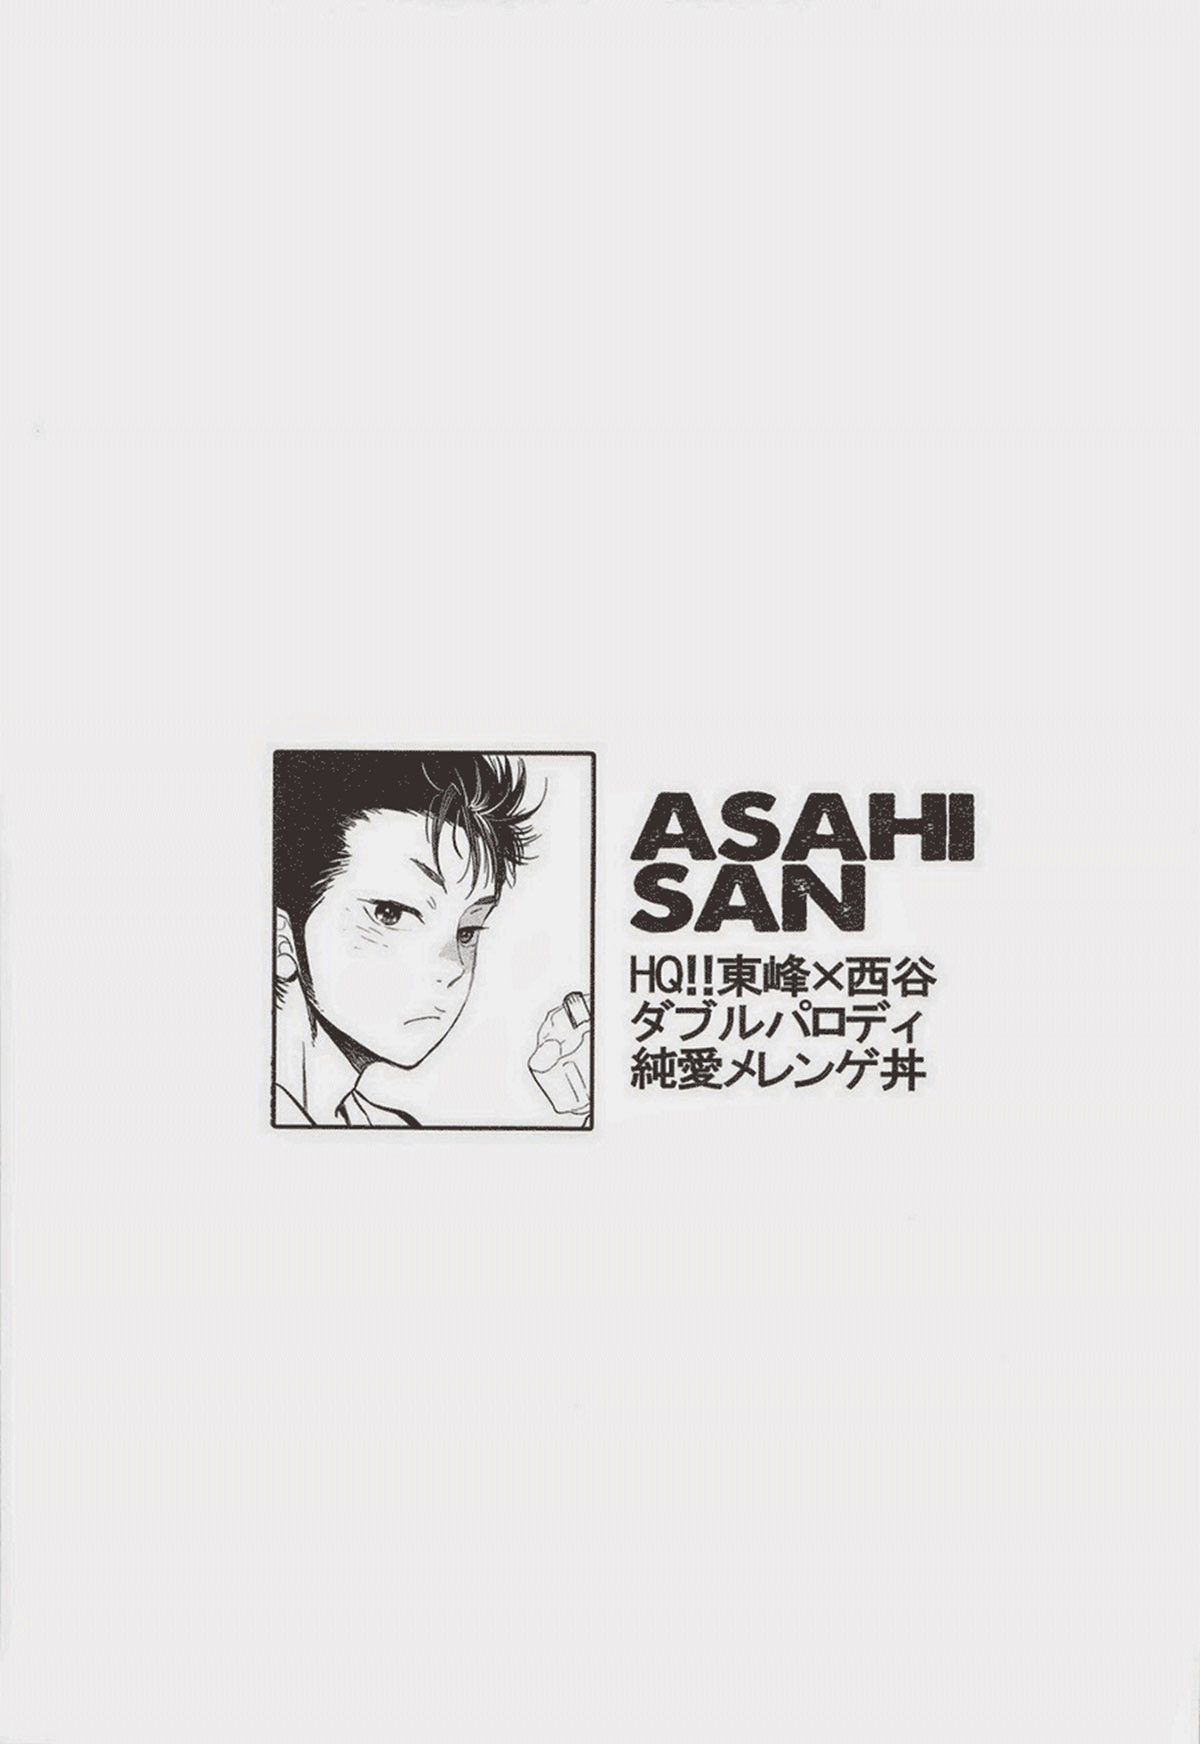 Asahi San